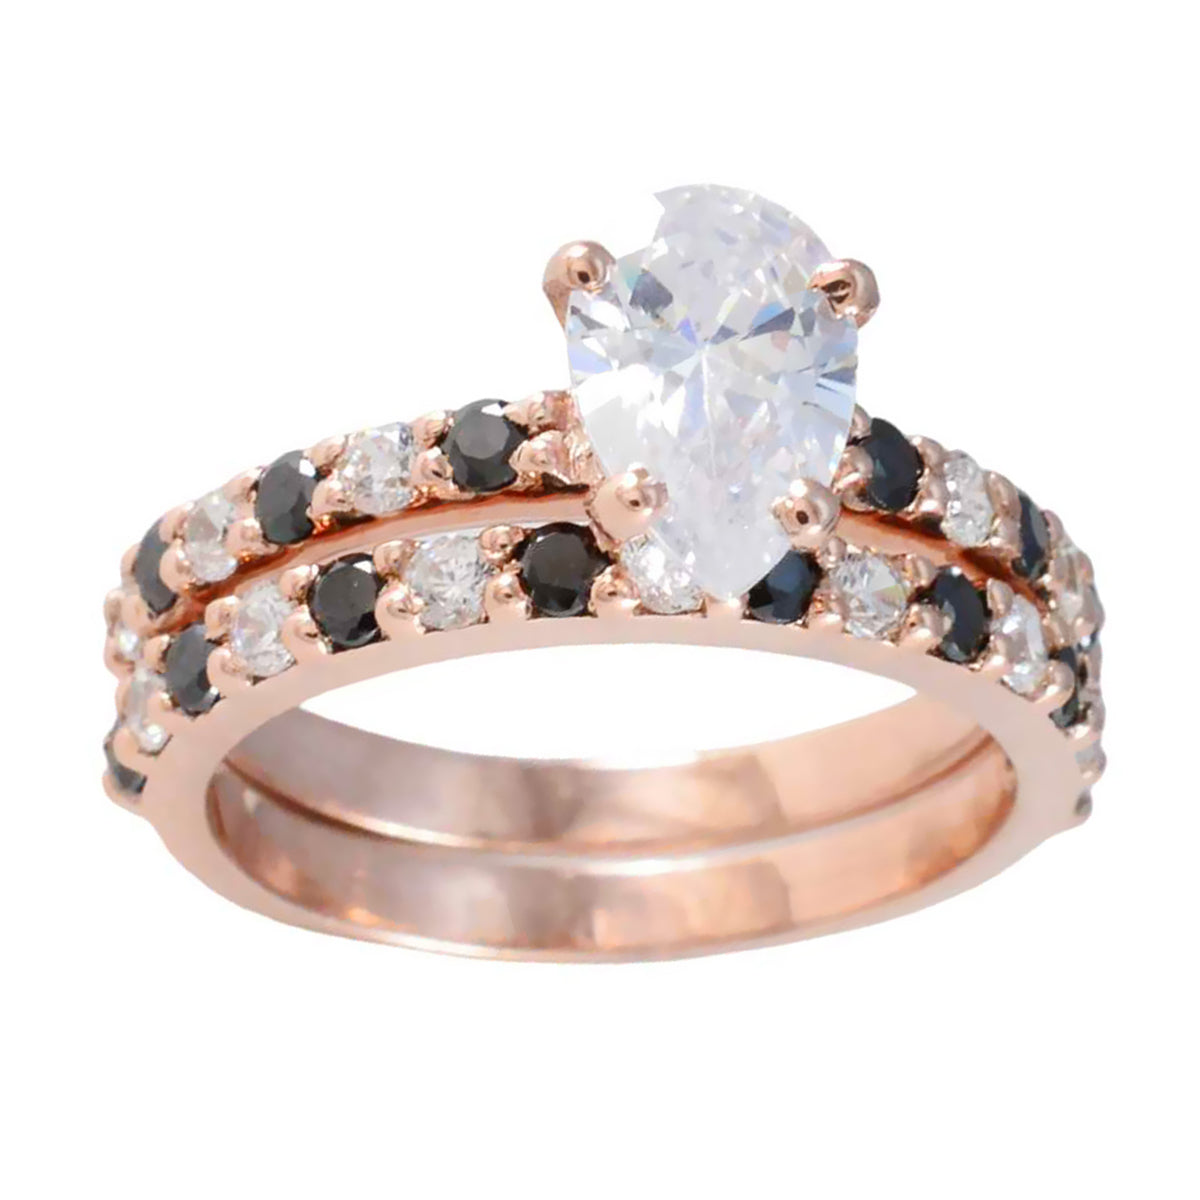 Riyo Supply anillo de plata con chapado en oro rosa piedra blanca cz forma de pera ajuste de punta joyería de diseñador anillo del día del padre